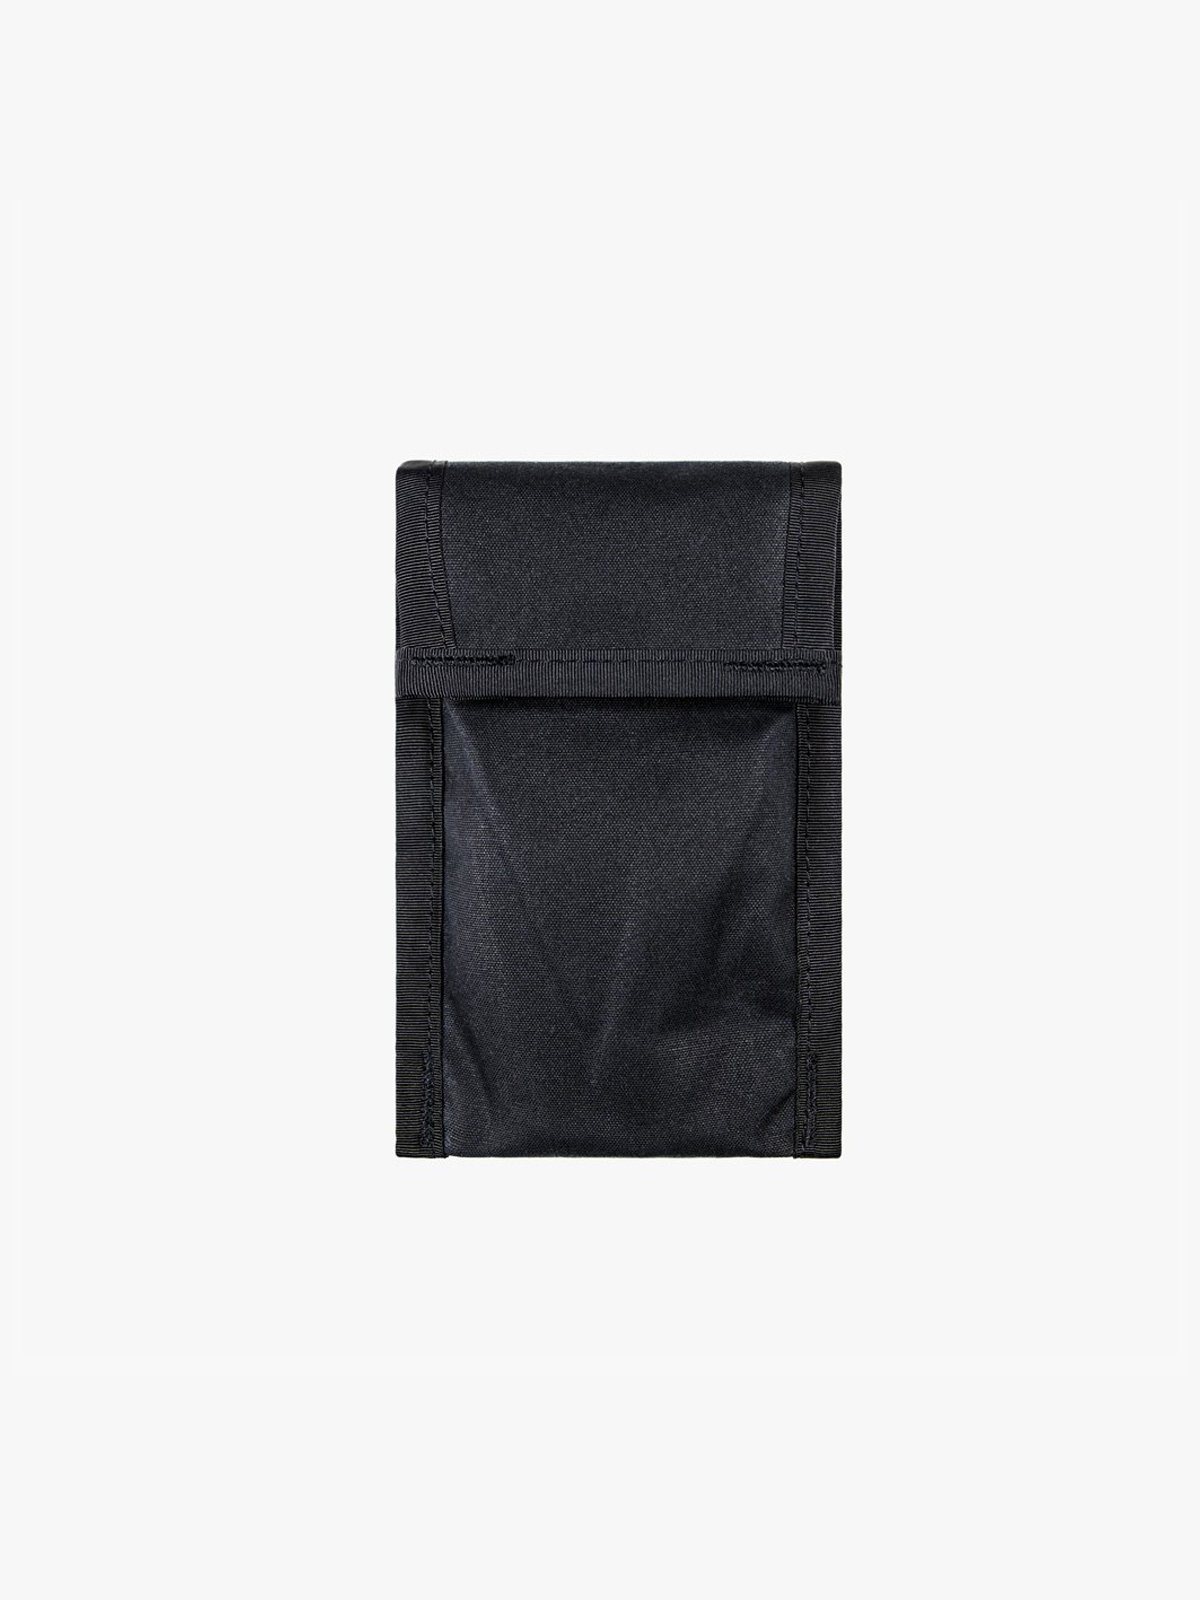 Arkiv Cell Pocket by Mission Workshop - Weerbestendige tassen & technische kleding - San Francisco & Los Angeles - Gebouwd om te weerstaan - Voor altijd gegarandeerd